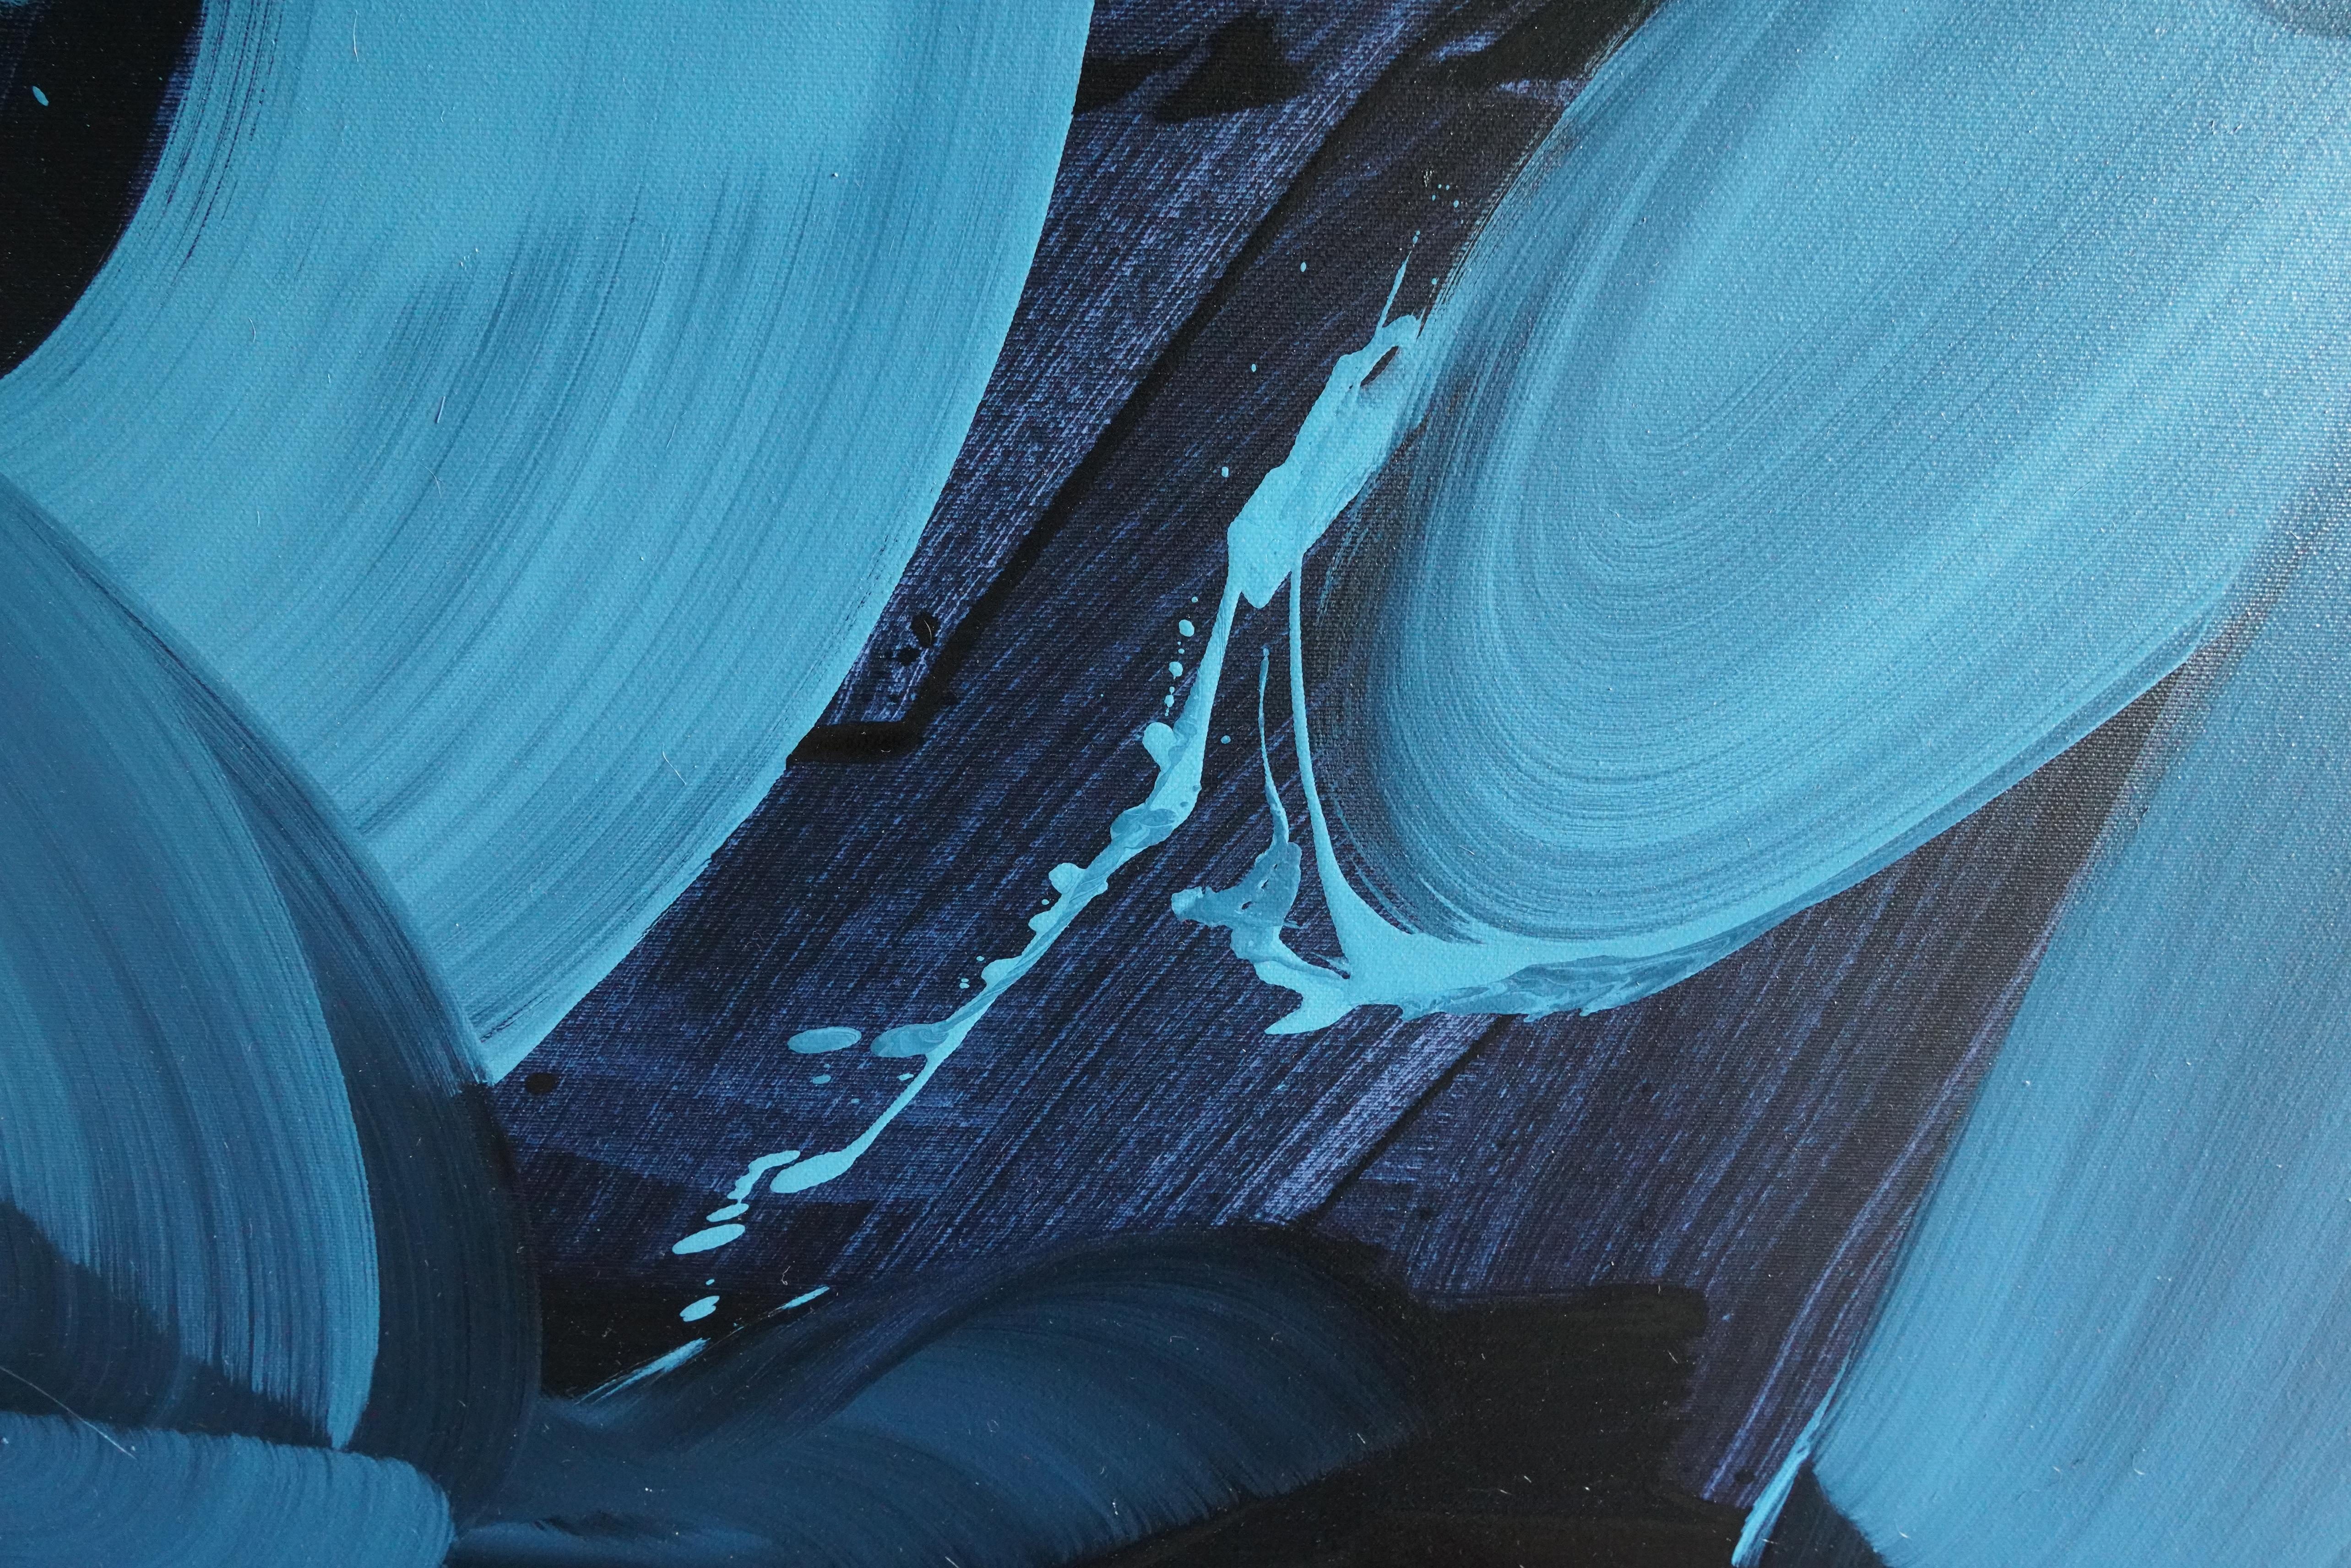 Bleu, Série de blouses - Peinture à l'huile moderne contemporaine, expression colorée - Painting de Grzegorz Radecki